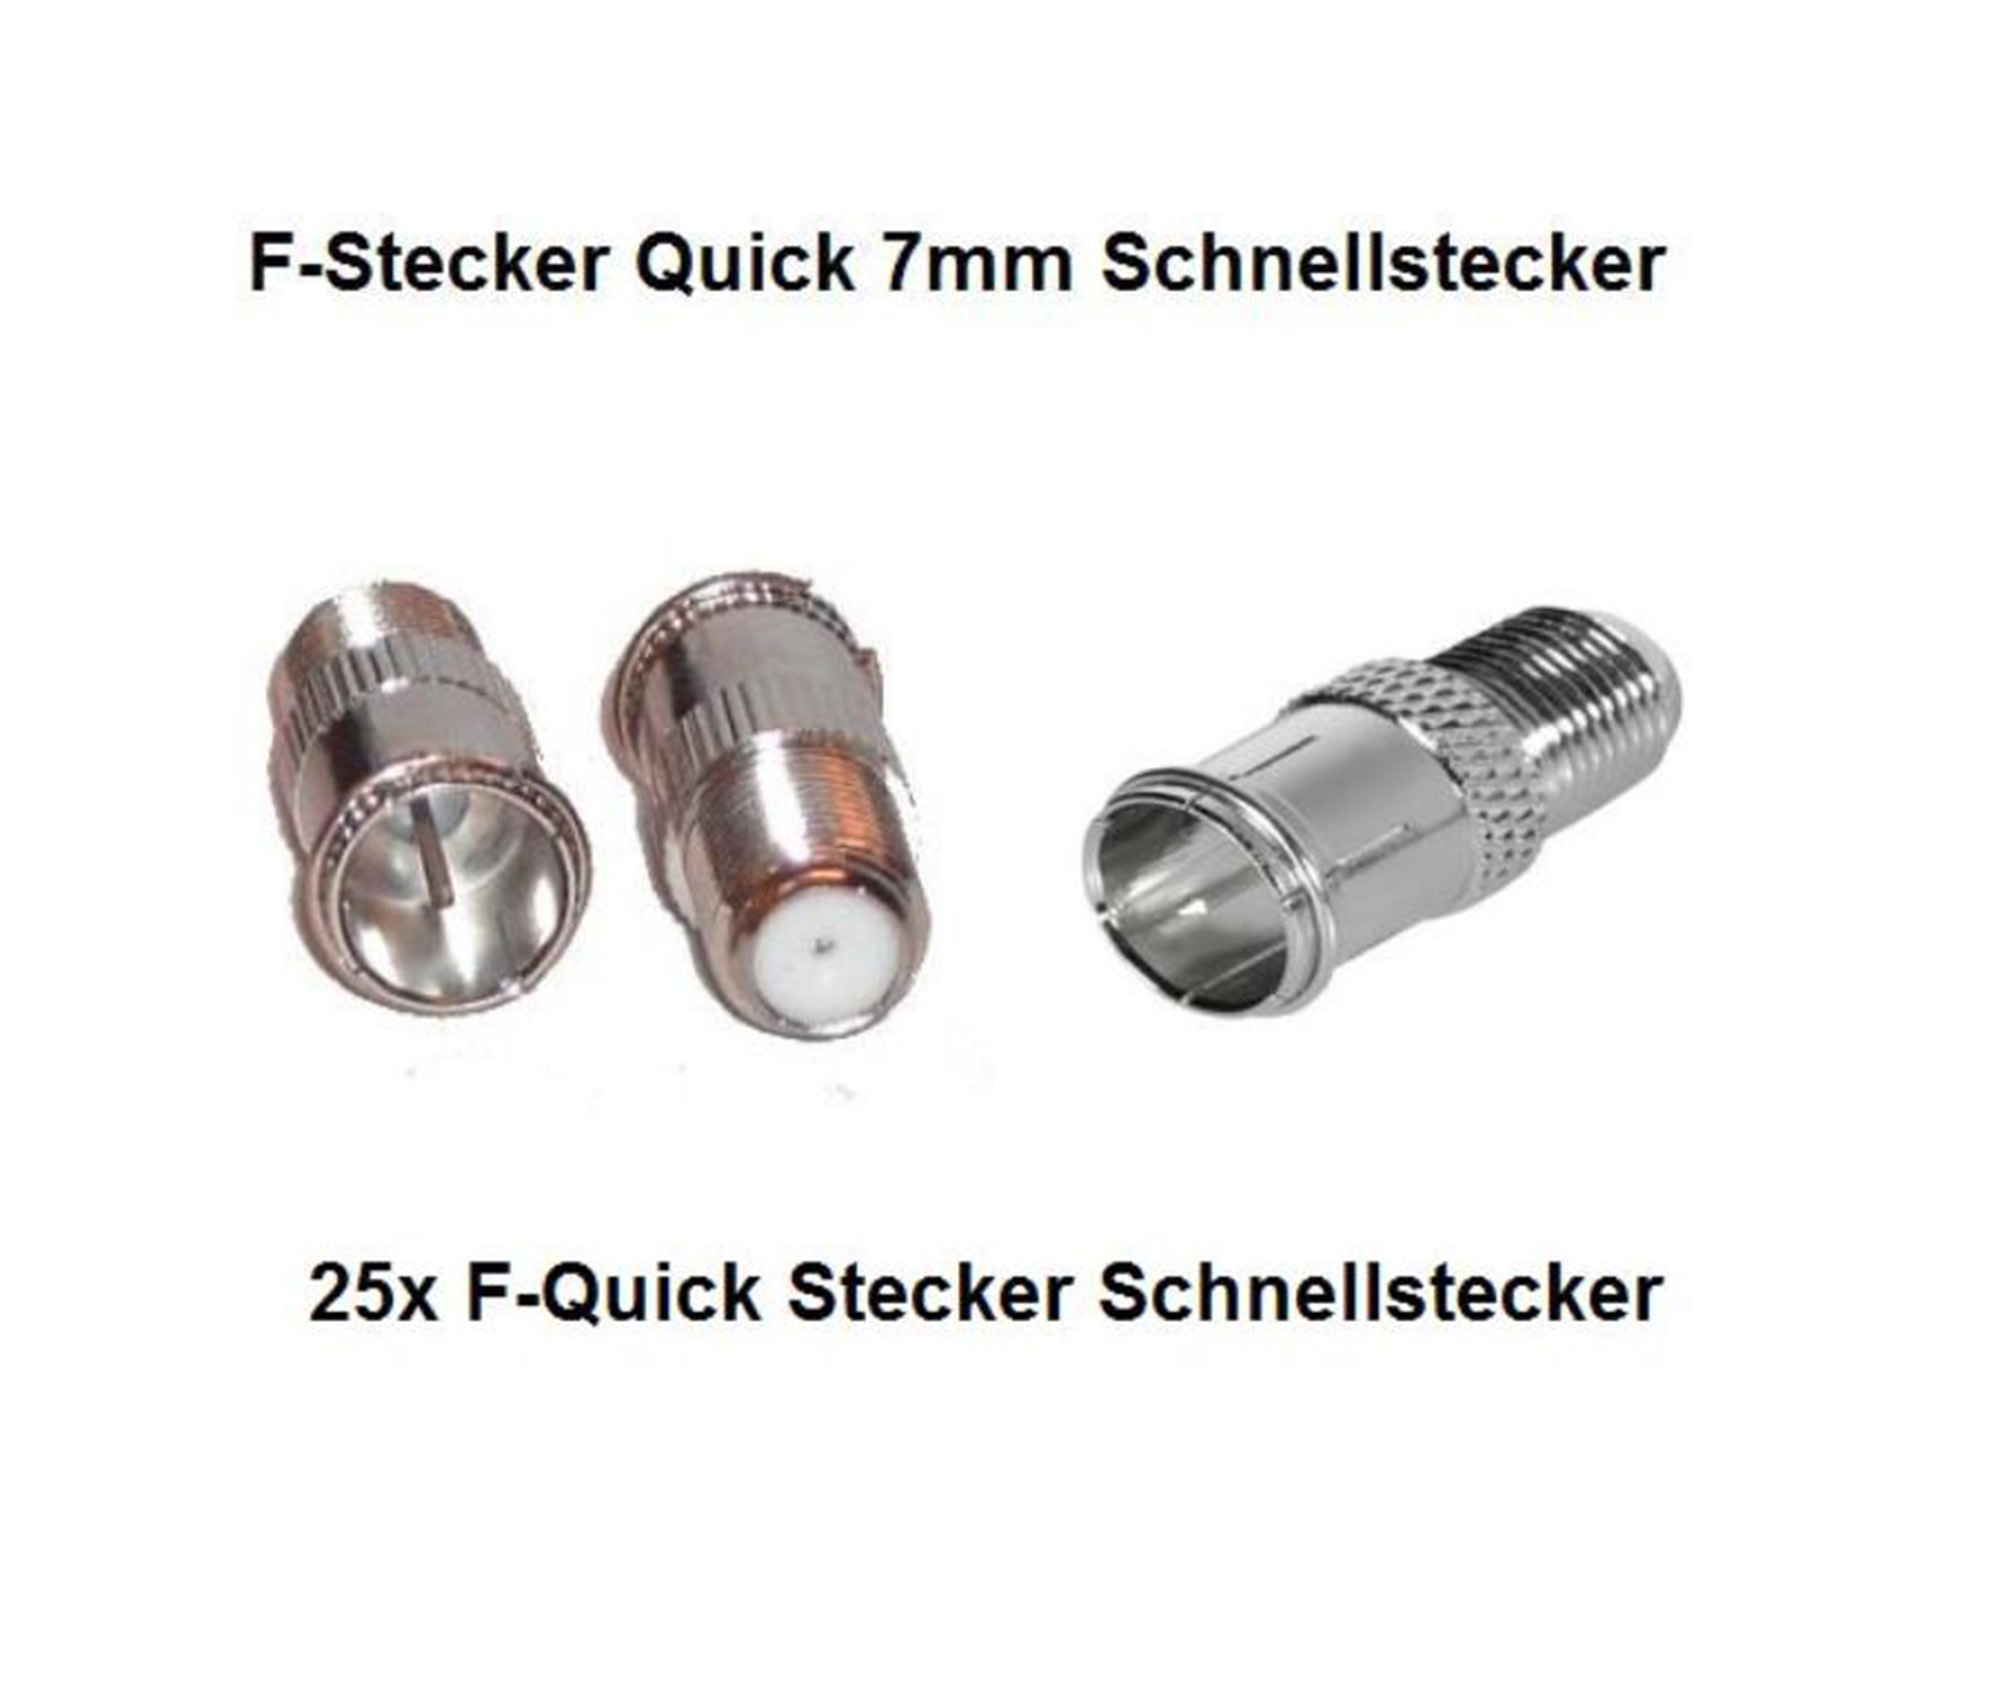 25x F-Stecker Quick 7mm Schnellstecker Kabel Sat Adapter 25er Pack